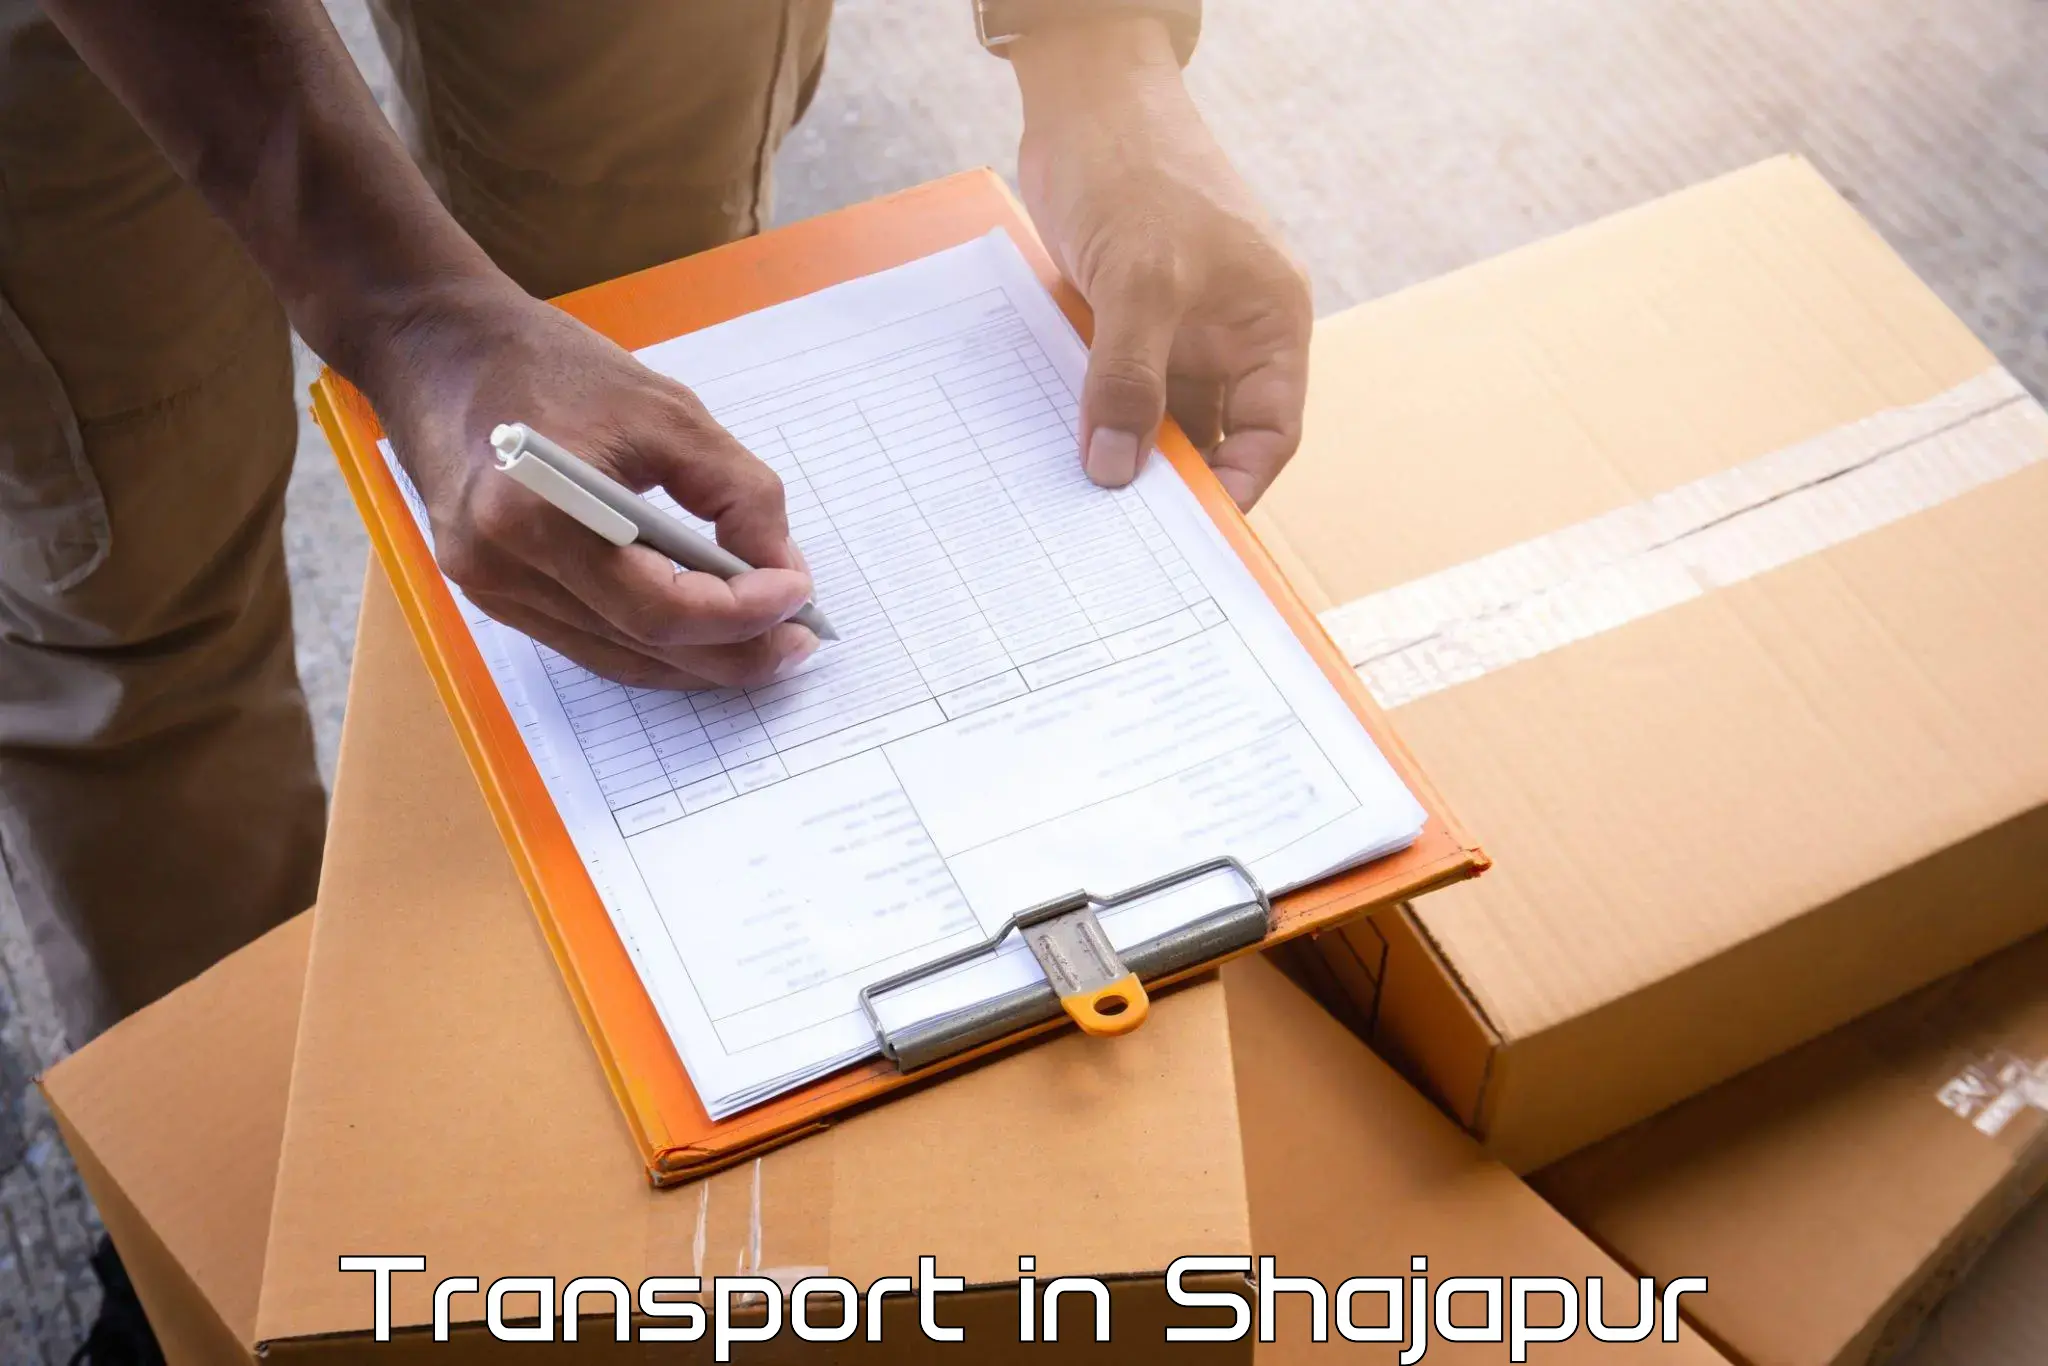 Commercial transport service in Shajapur